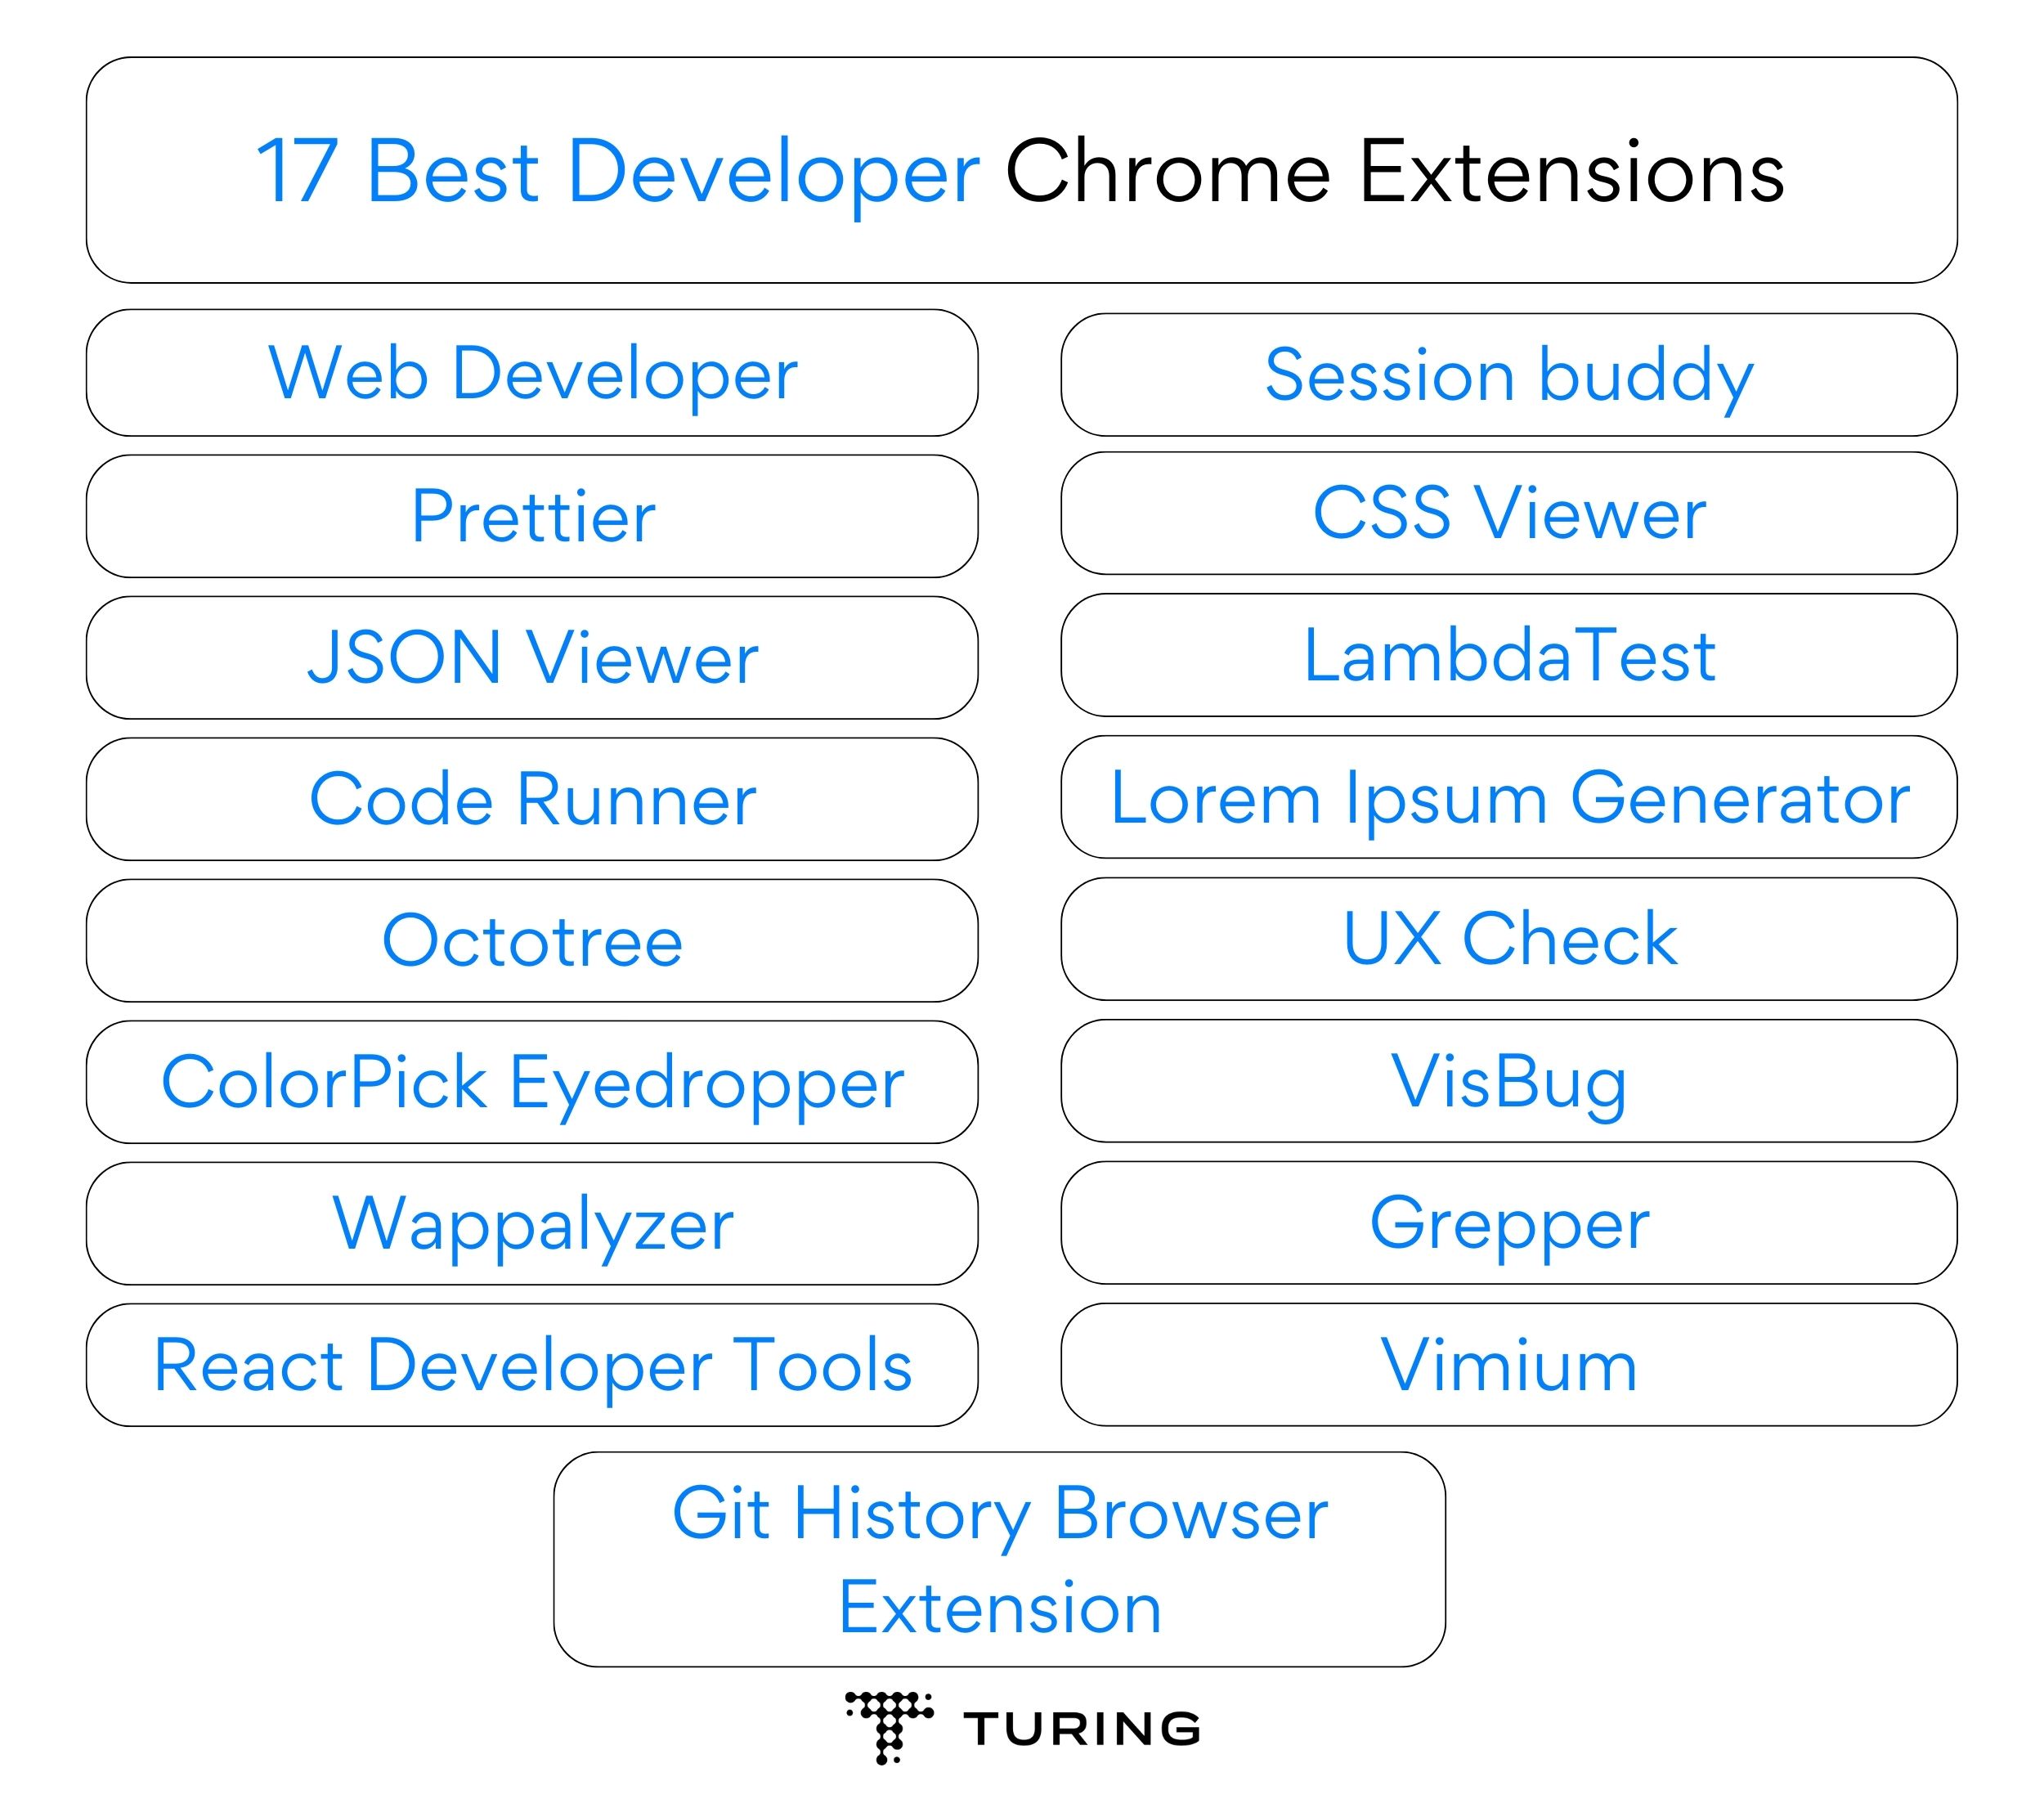 17 Best Developer Chrome Extensions